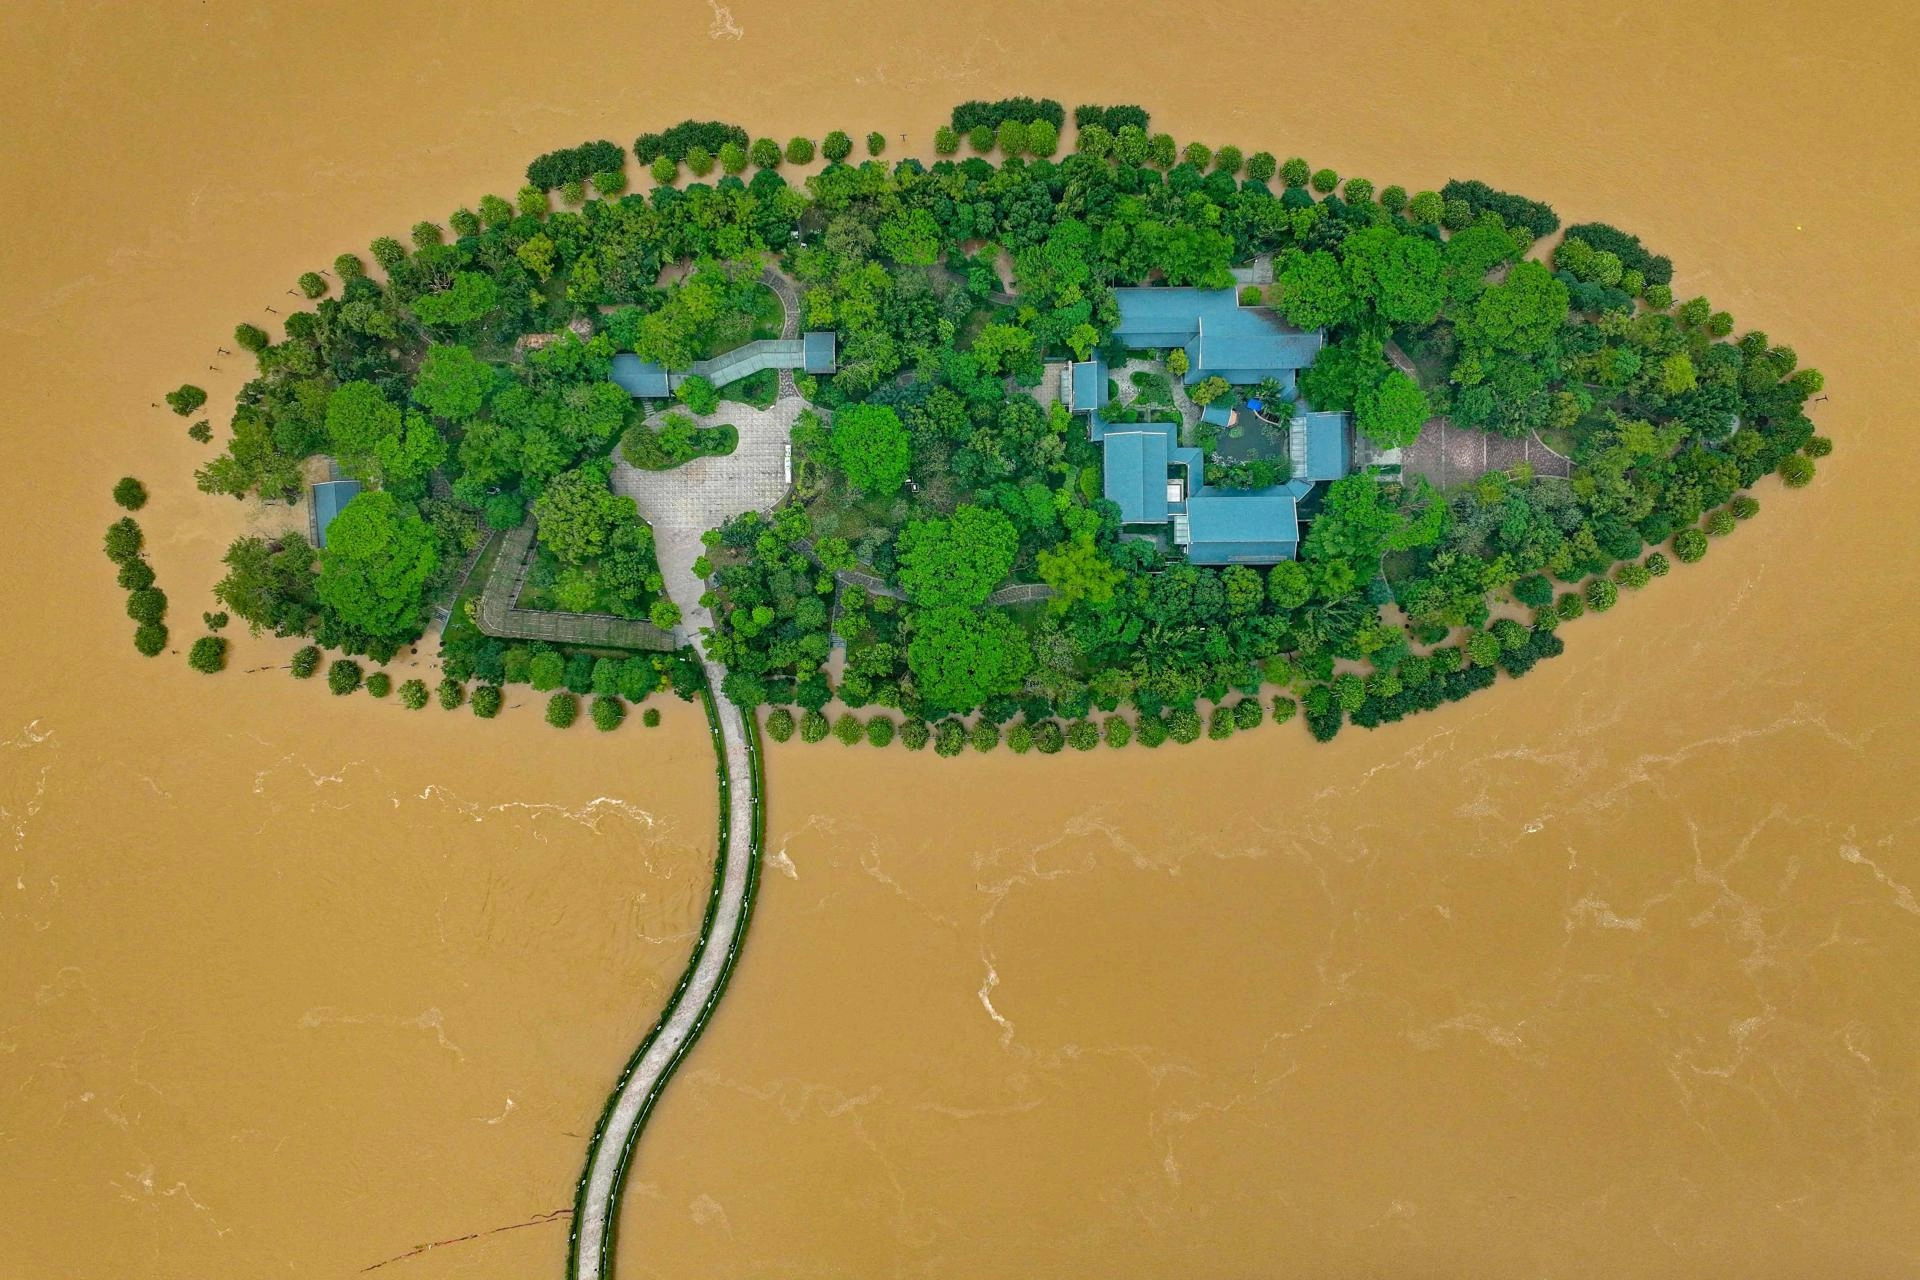 Blatna voda guta betonsku džunglu, 127 milijuna ljudi u pripravnosti: "Ovo se viđa jednom u 100 godina"